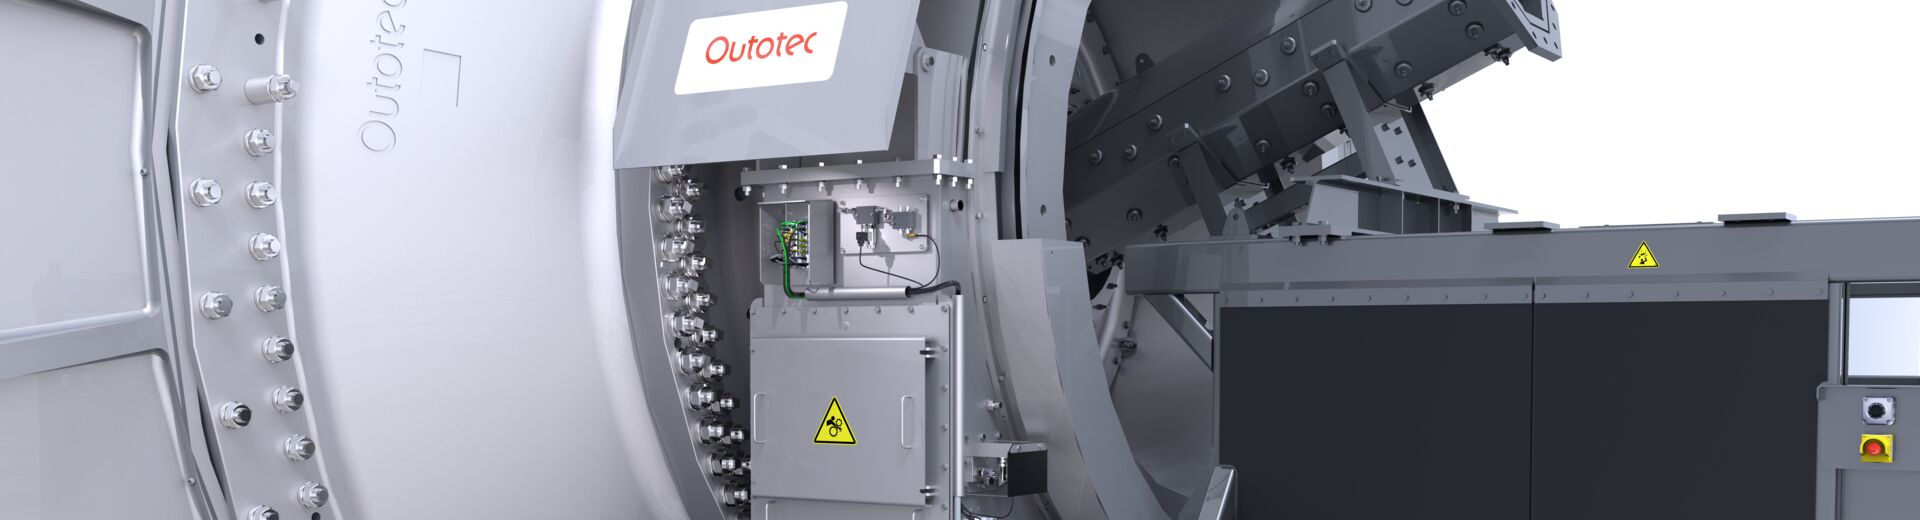 Система управления мельницами Metso Outotec® Mill Control System